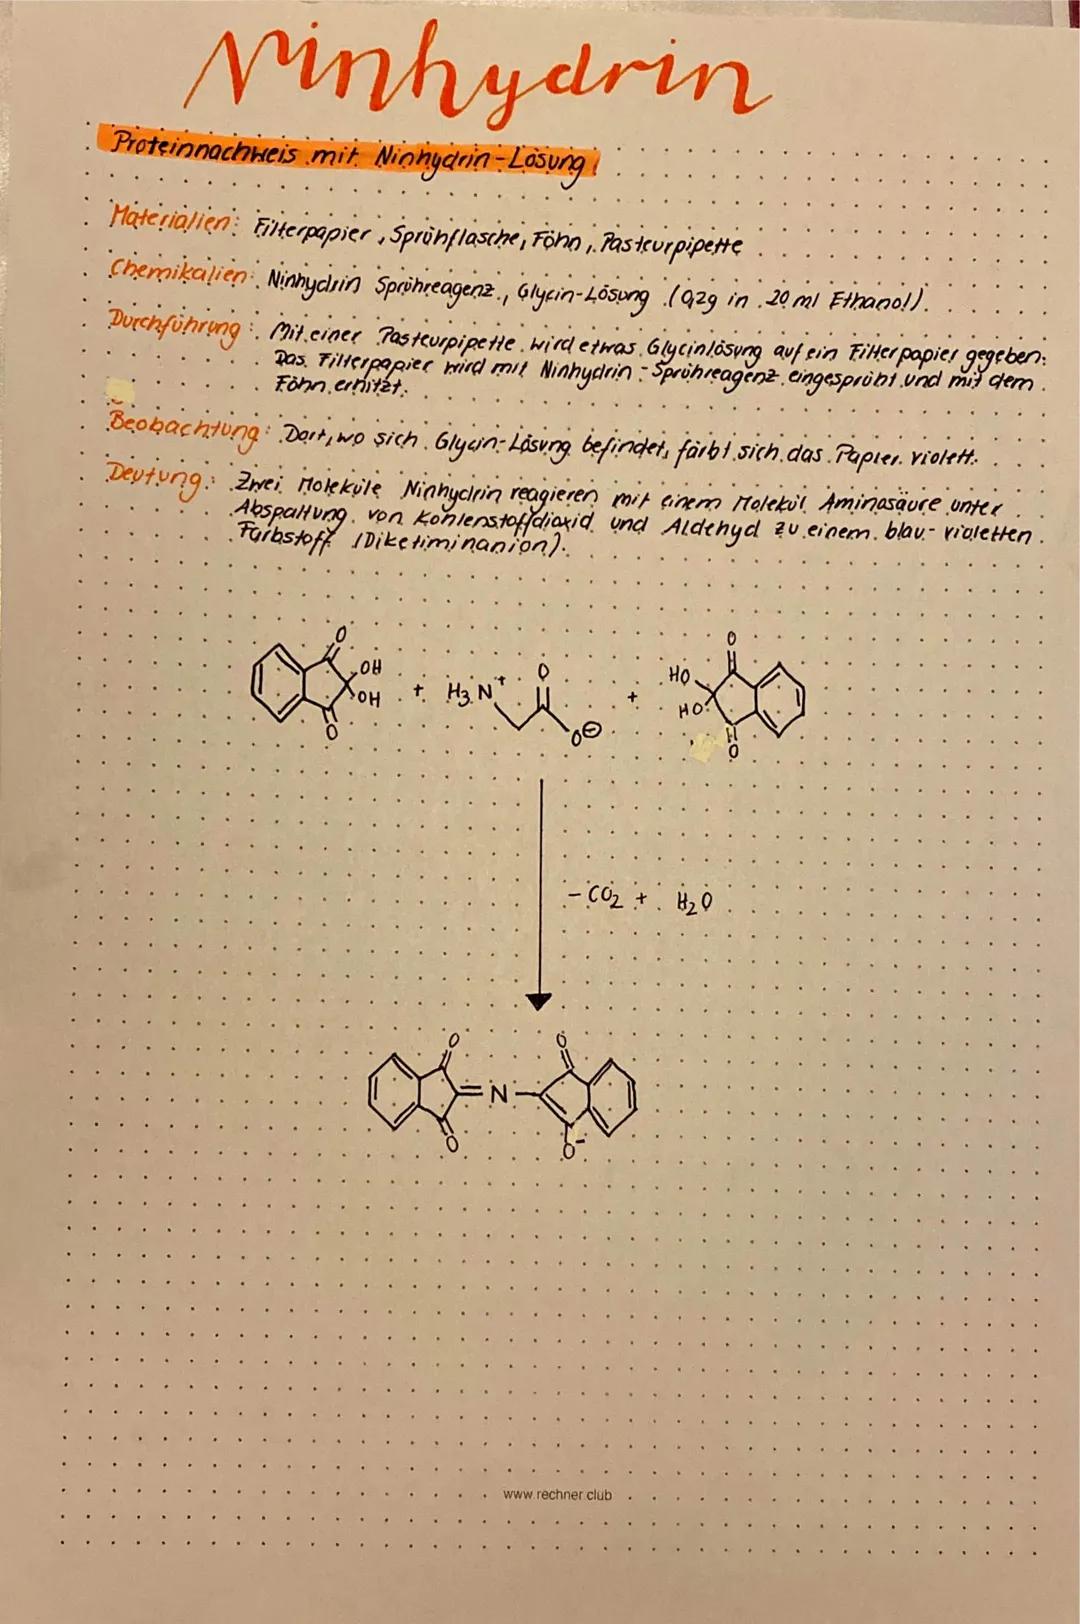 Aminosäuren
Una nosauren sind eine klasse, orgonischer Verbindungen mit mindestens einer Carboxyl - Gruppe (-COOM)
und mindestens einer Amin